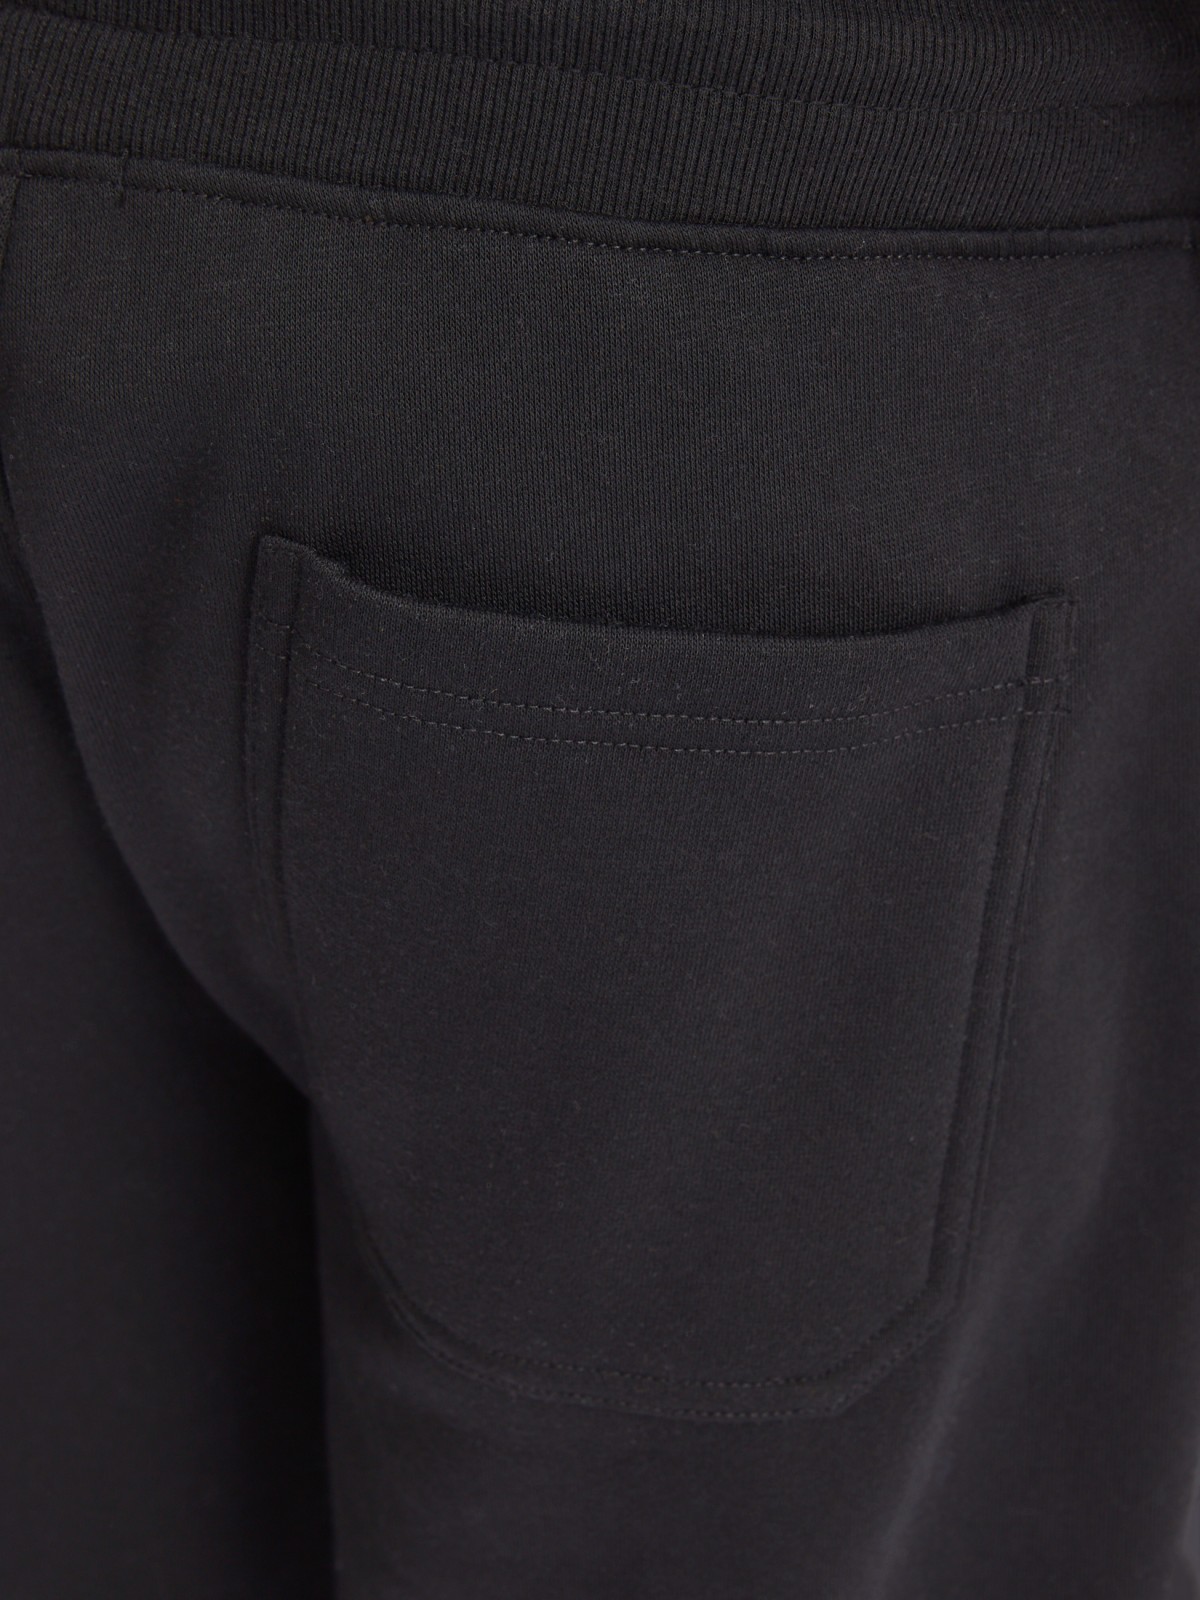 Утеплённые трикотажные брюки-джоггеры в спортивном стиле zolla 213337675022, цвет черный, размер M - фото 6